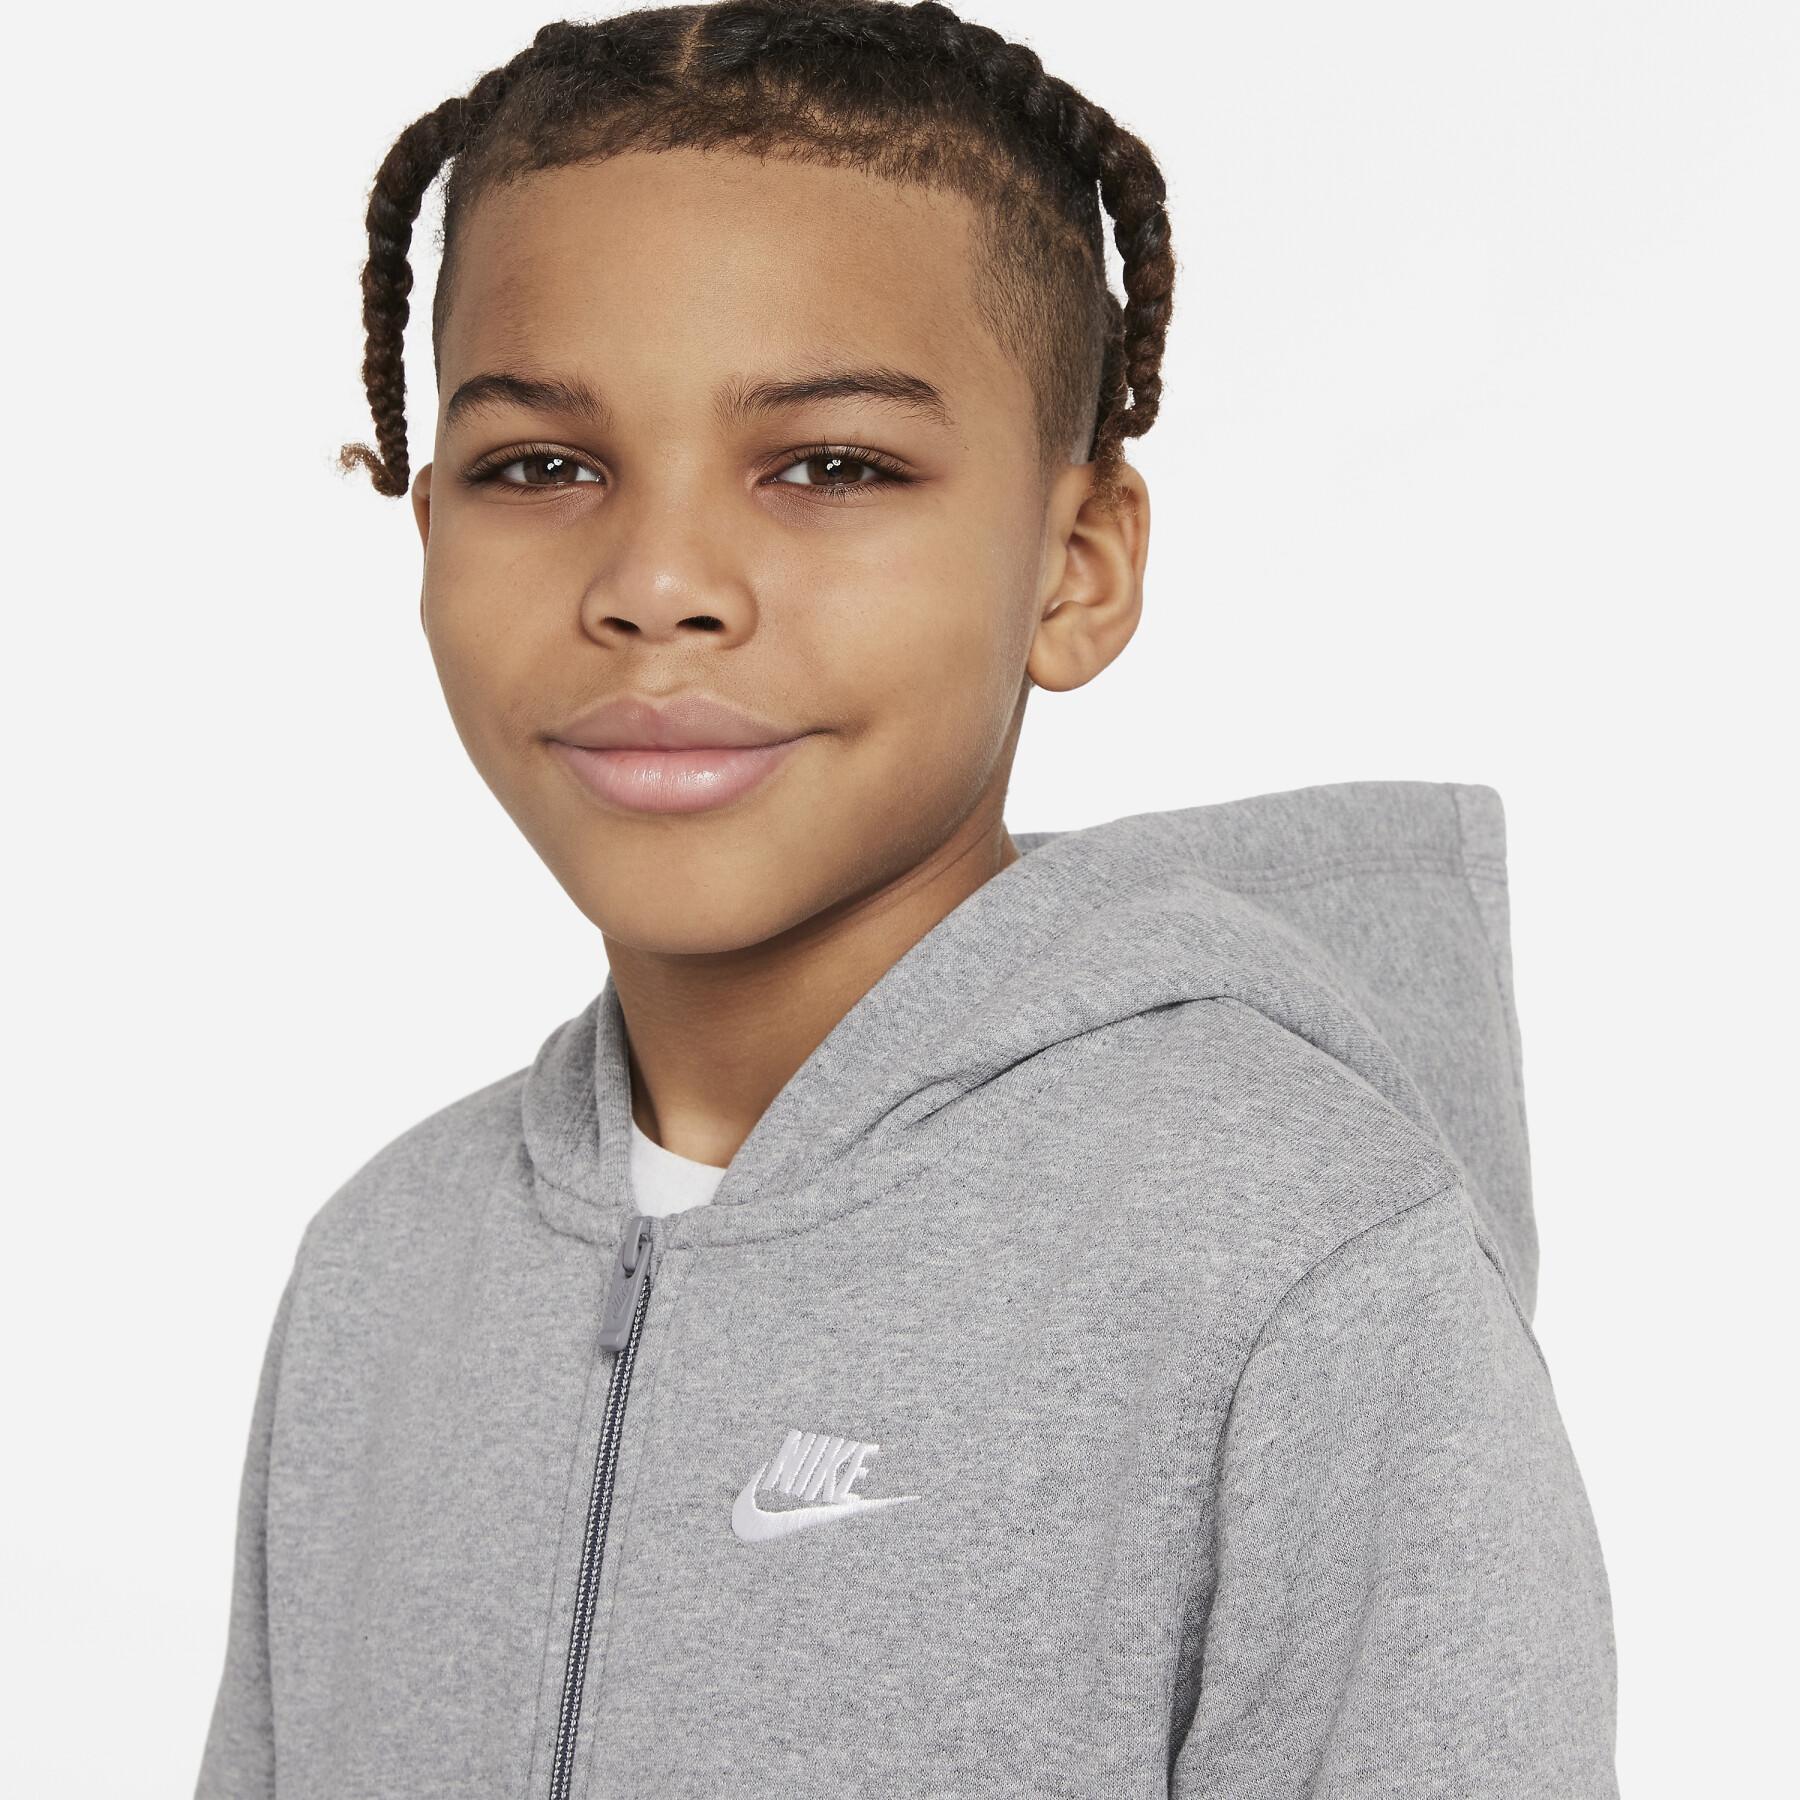 Kinder sweatshirt met capuchon Nike Club